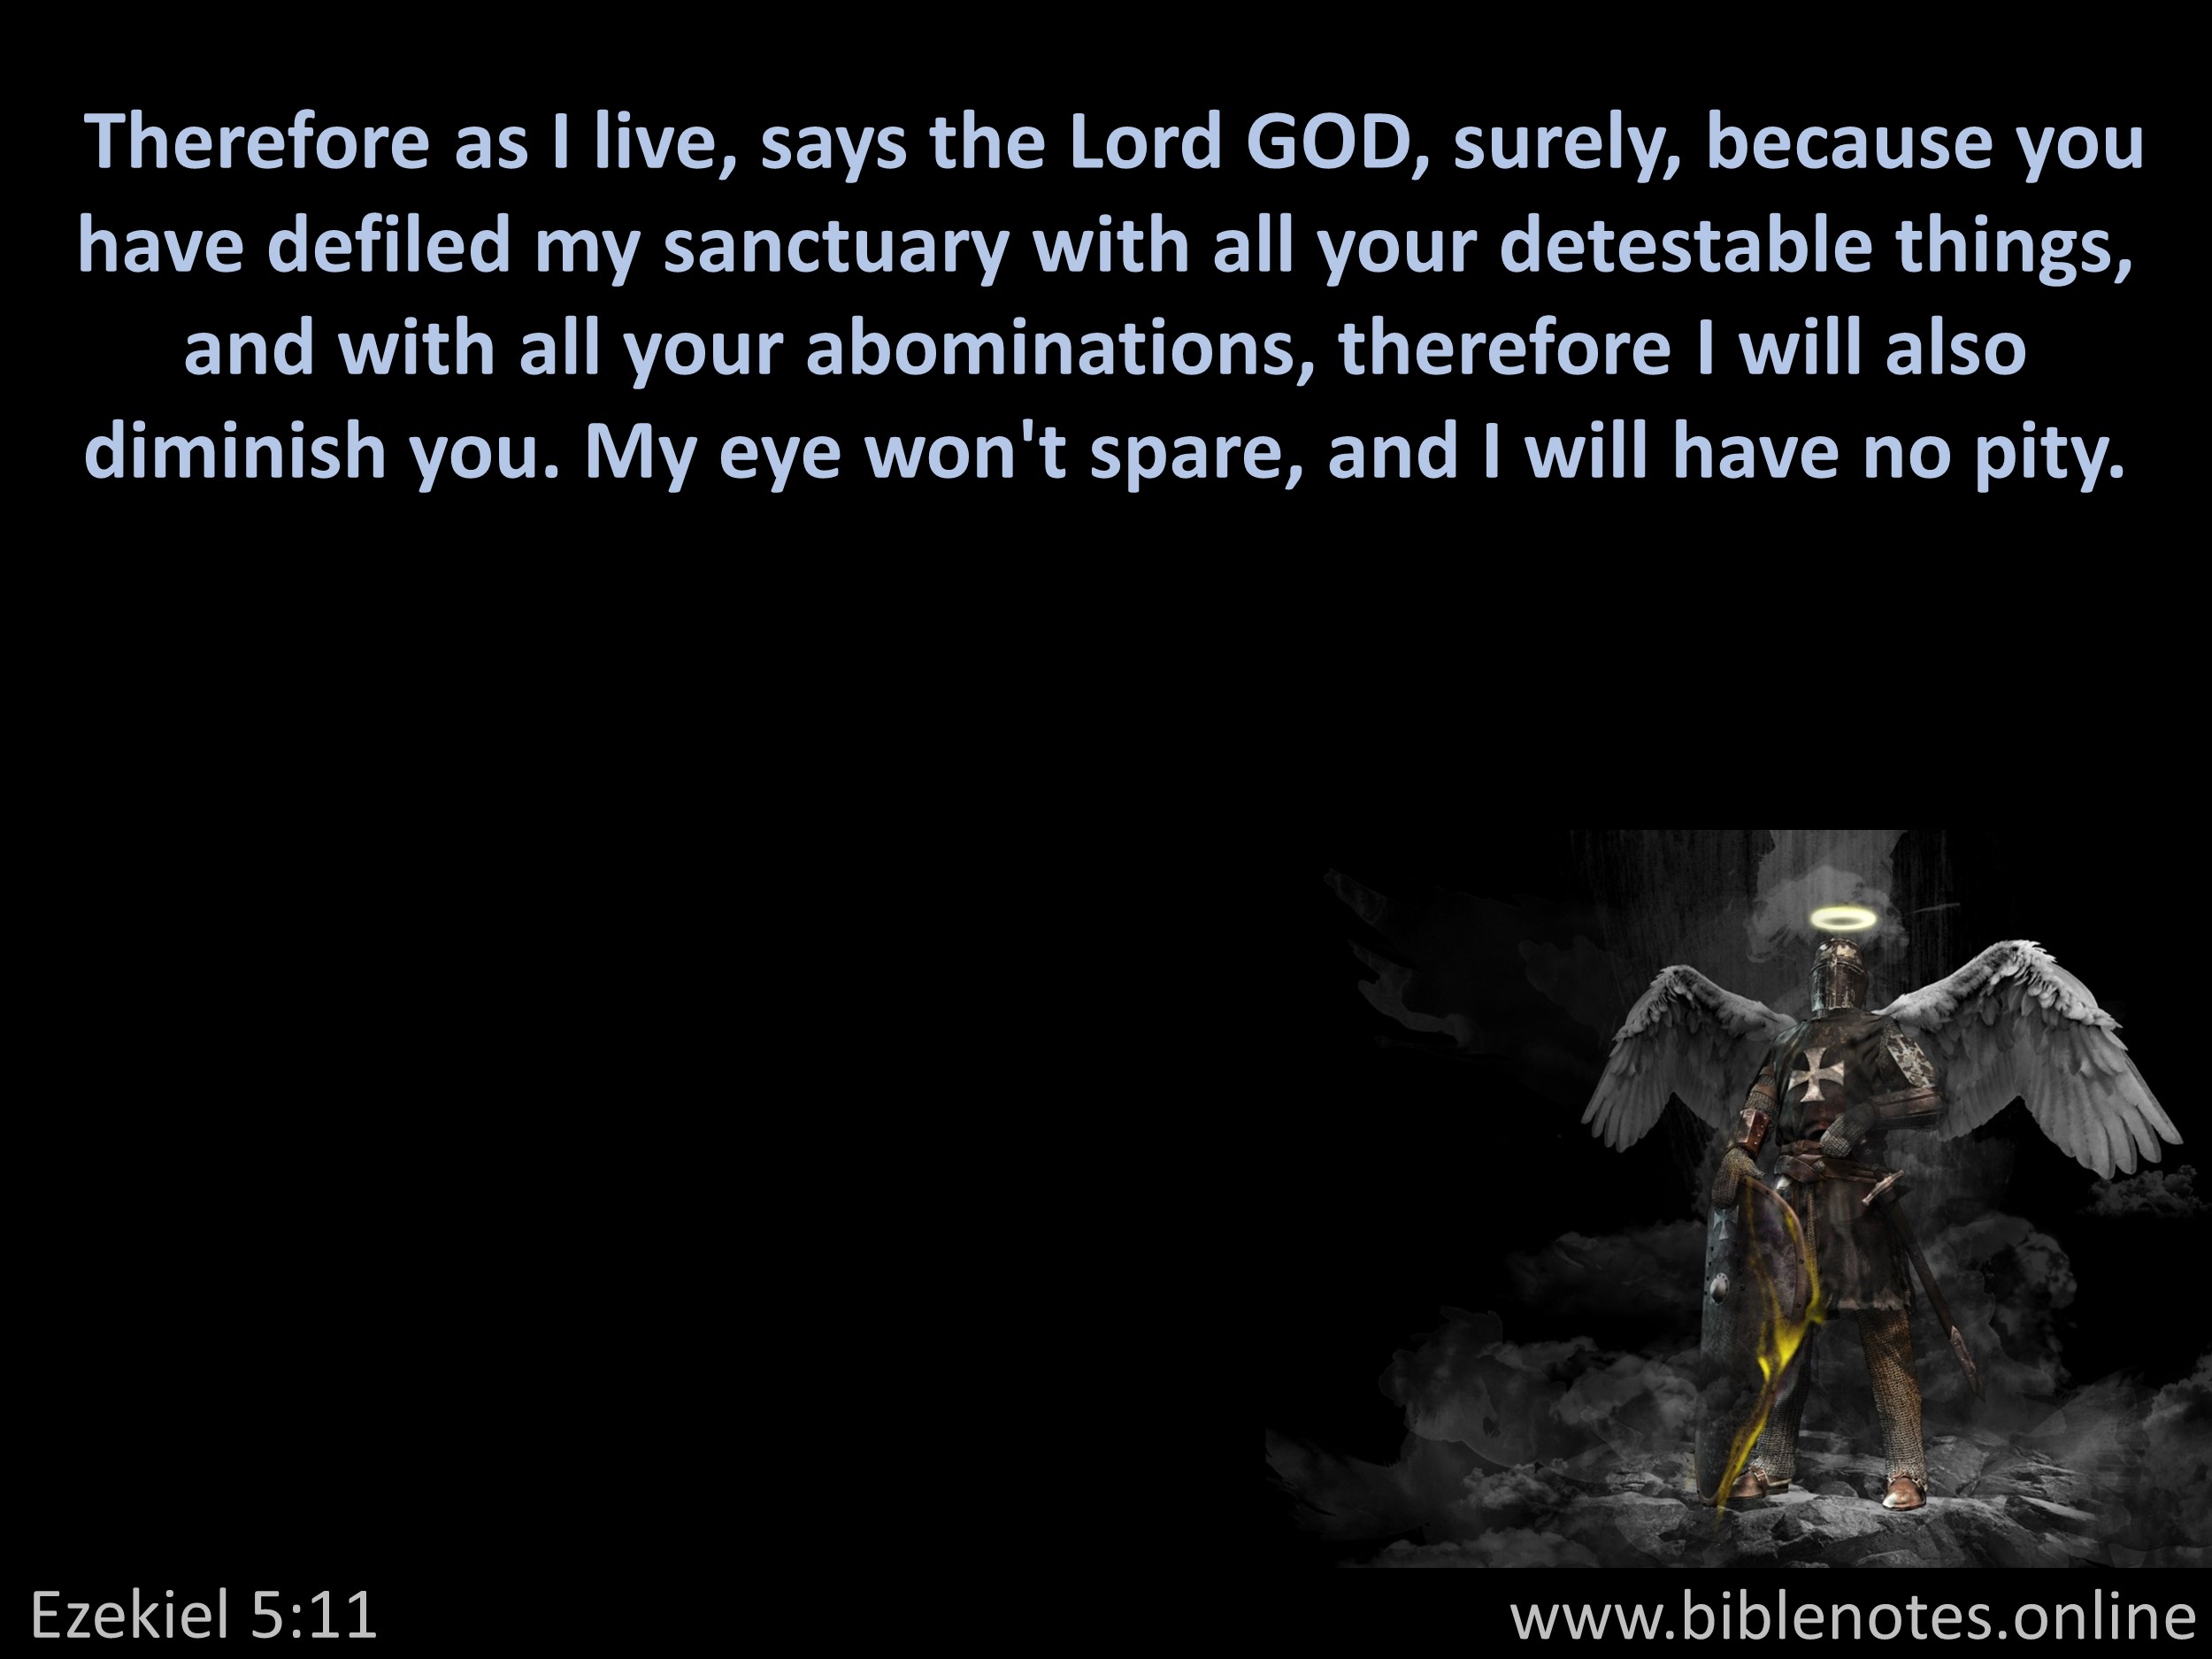 Bible Verse from Ezekiel Chapter 5